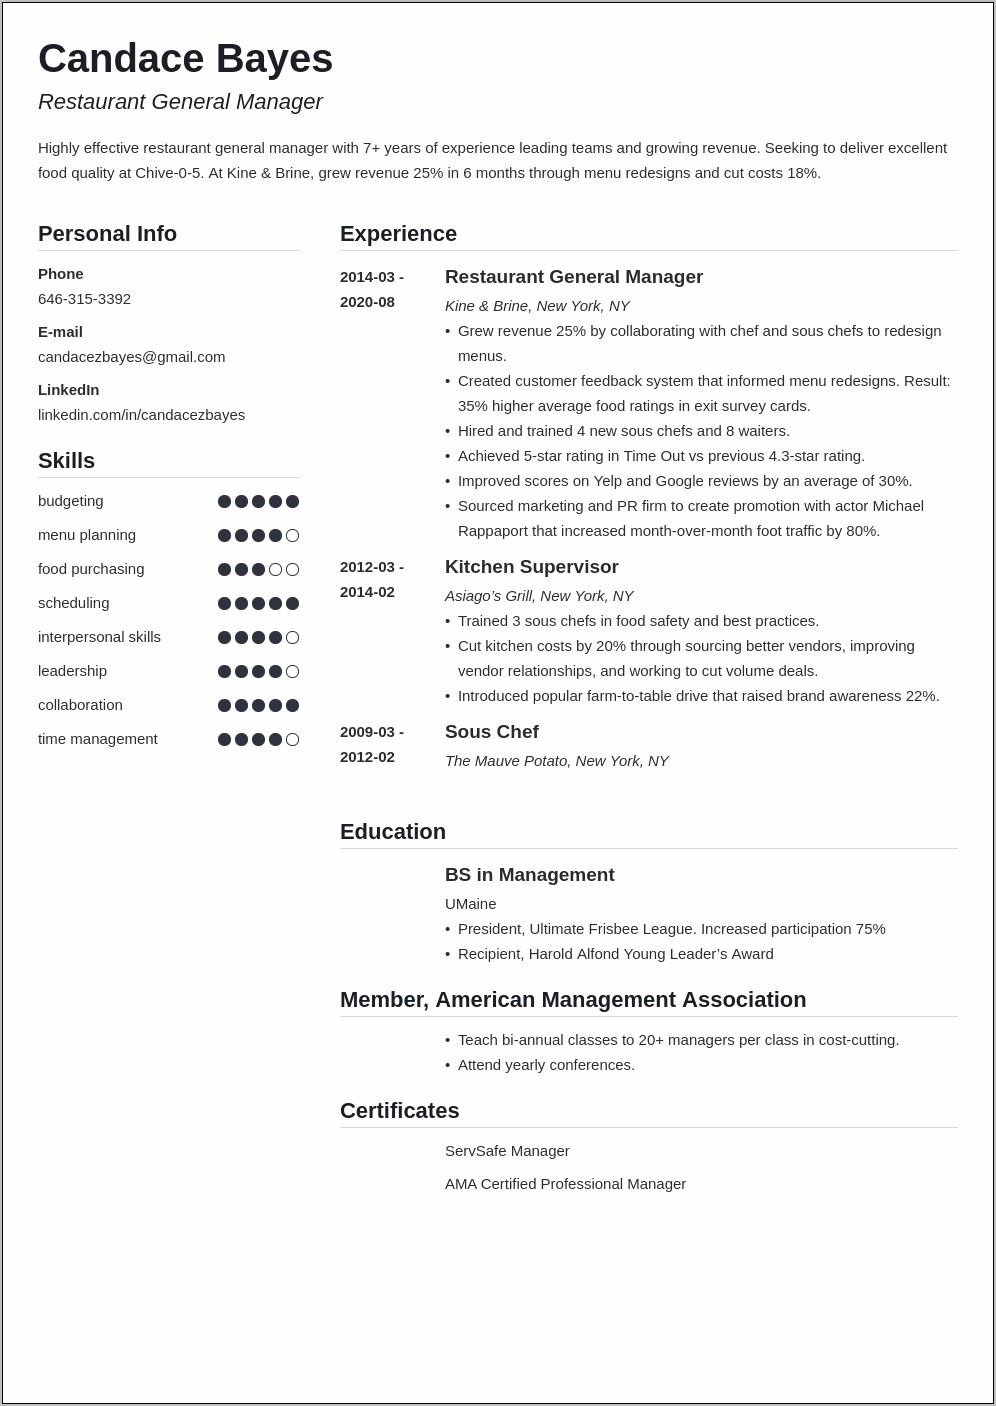 Restaurant General Manager Resume For Online